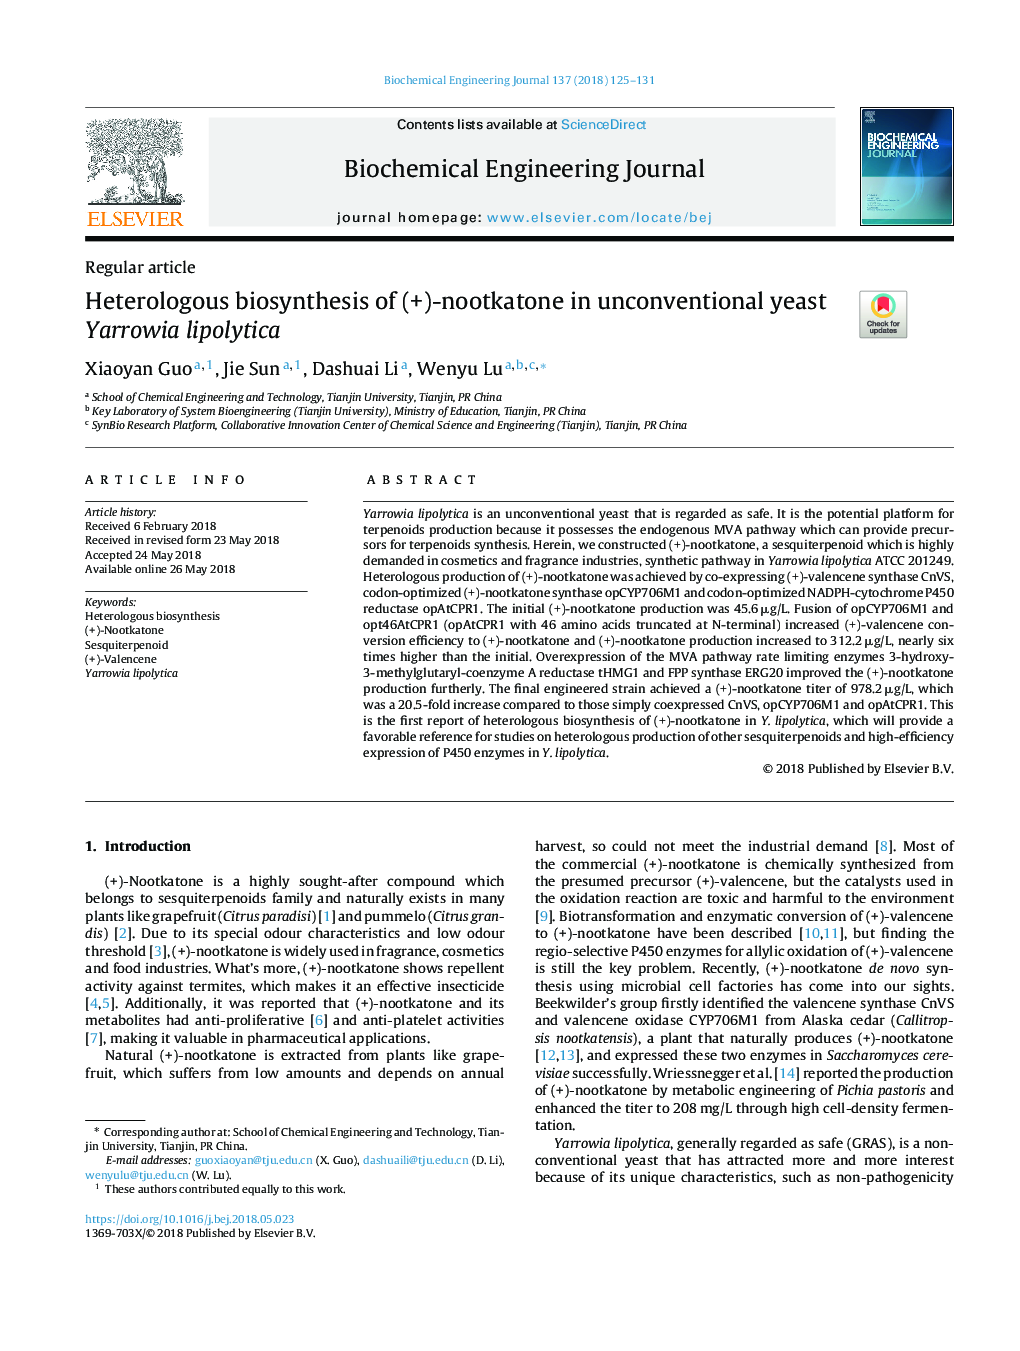 Heterologous biosynthesis of (+)-nootkatone in unconventional yeast Yarrowia lipolytica